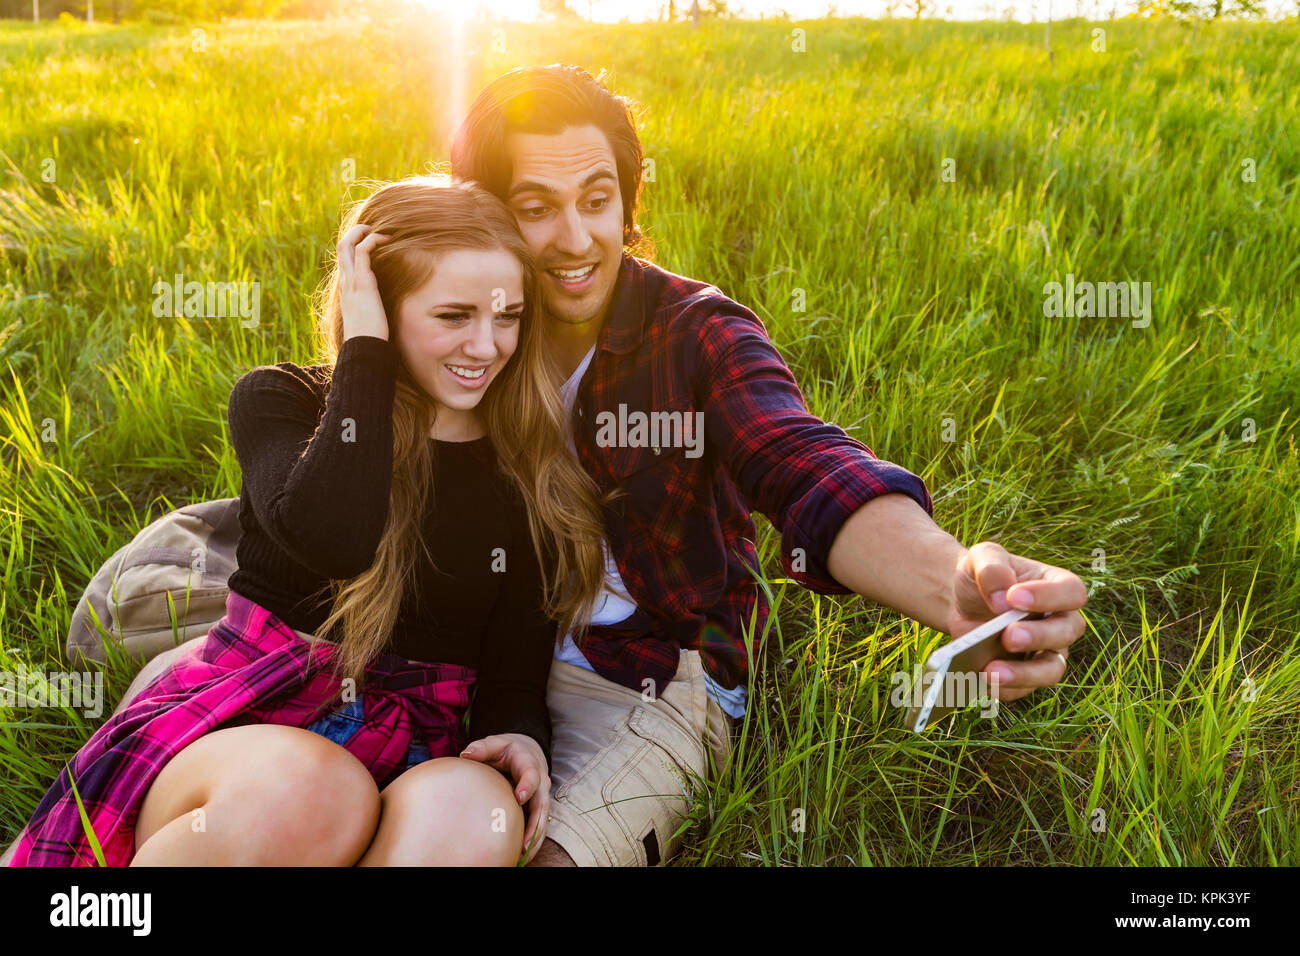 Junges Paar in einem Park für einen selbst posiert - Porträt mit ihrem Handy, Edmonton, Alberta, Kanada Stockfoto